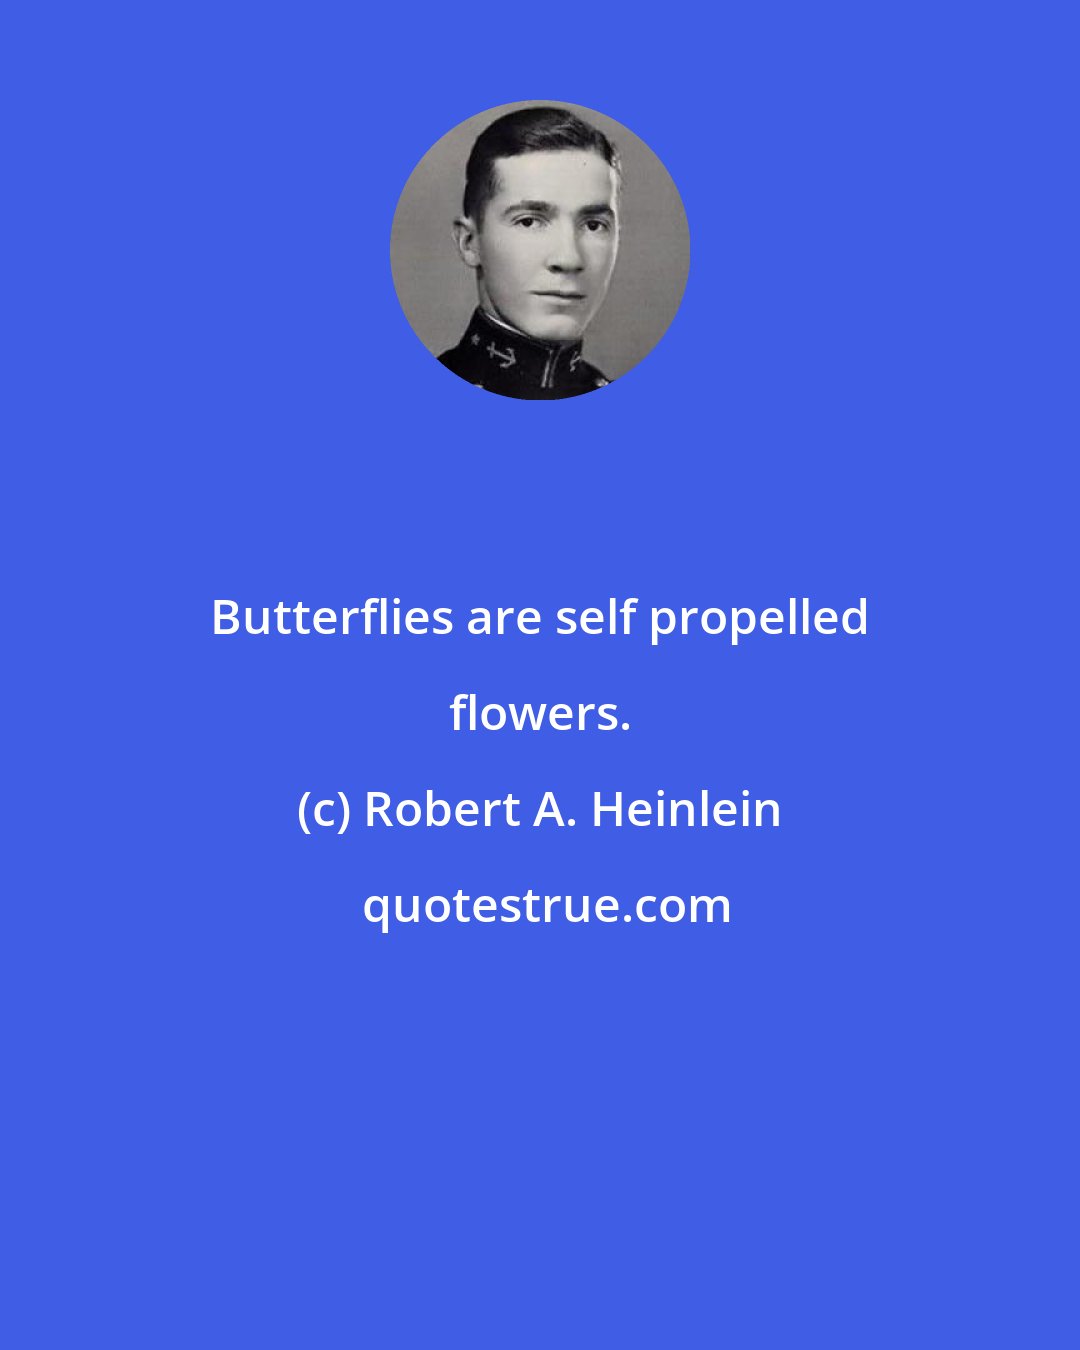 Robert A. Heinlein: Butterflies are self propelled flowers.